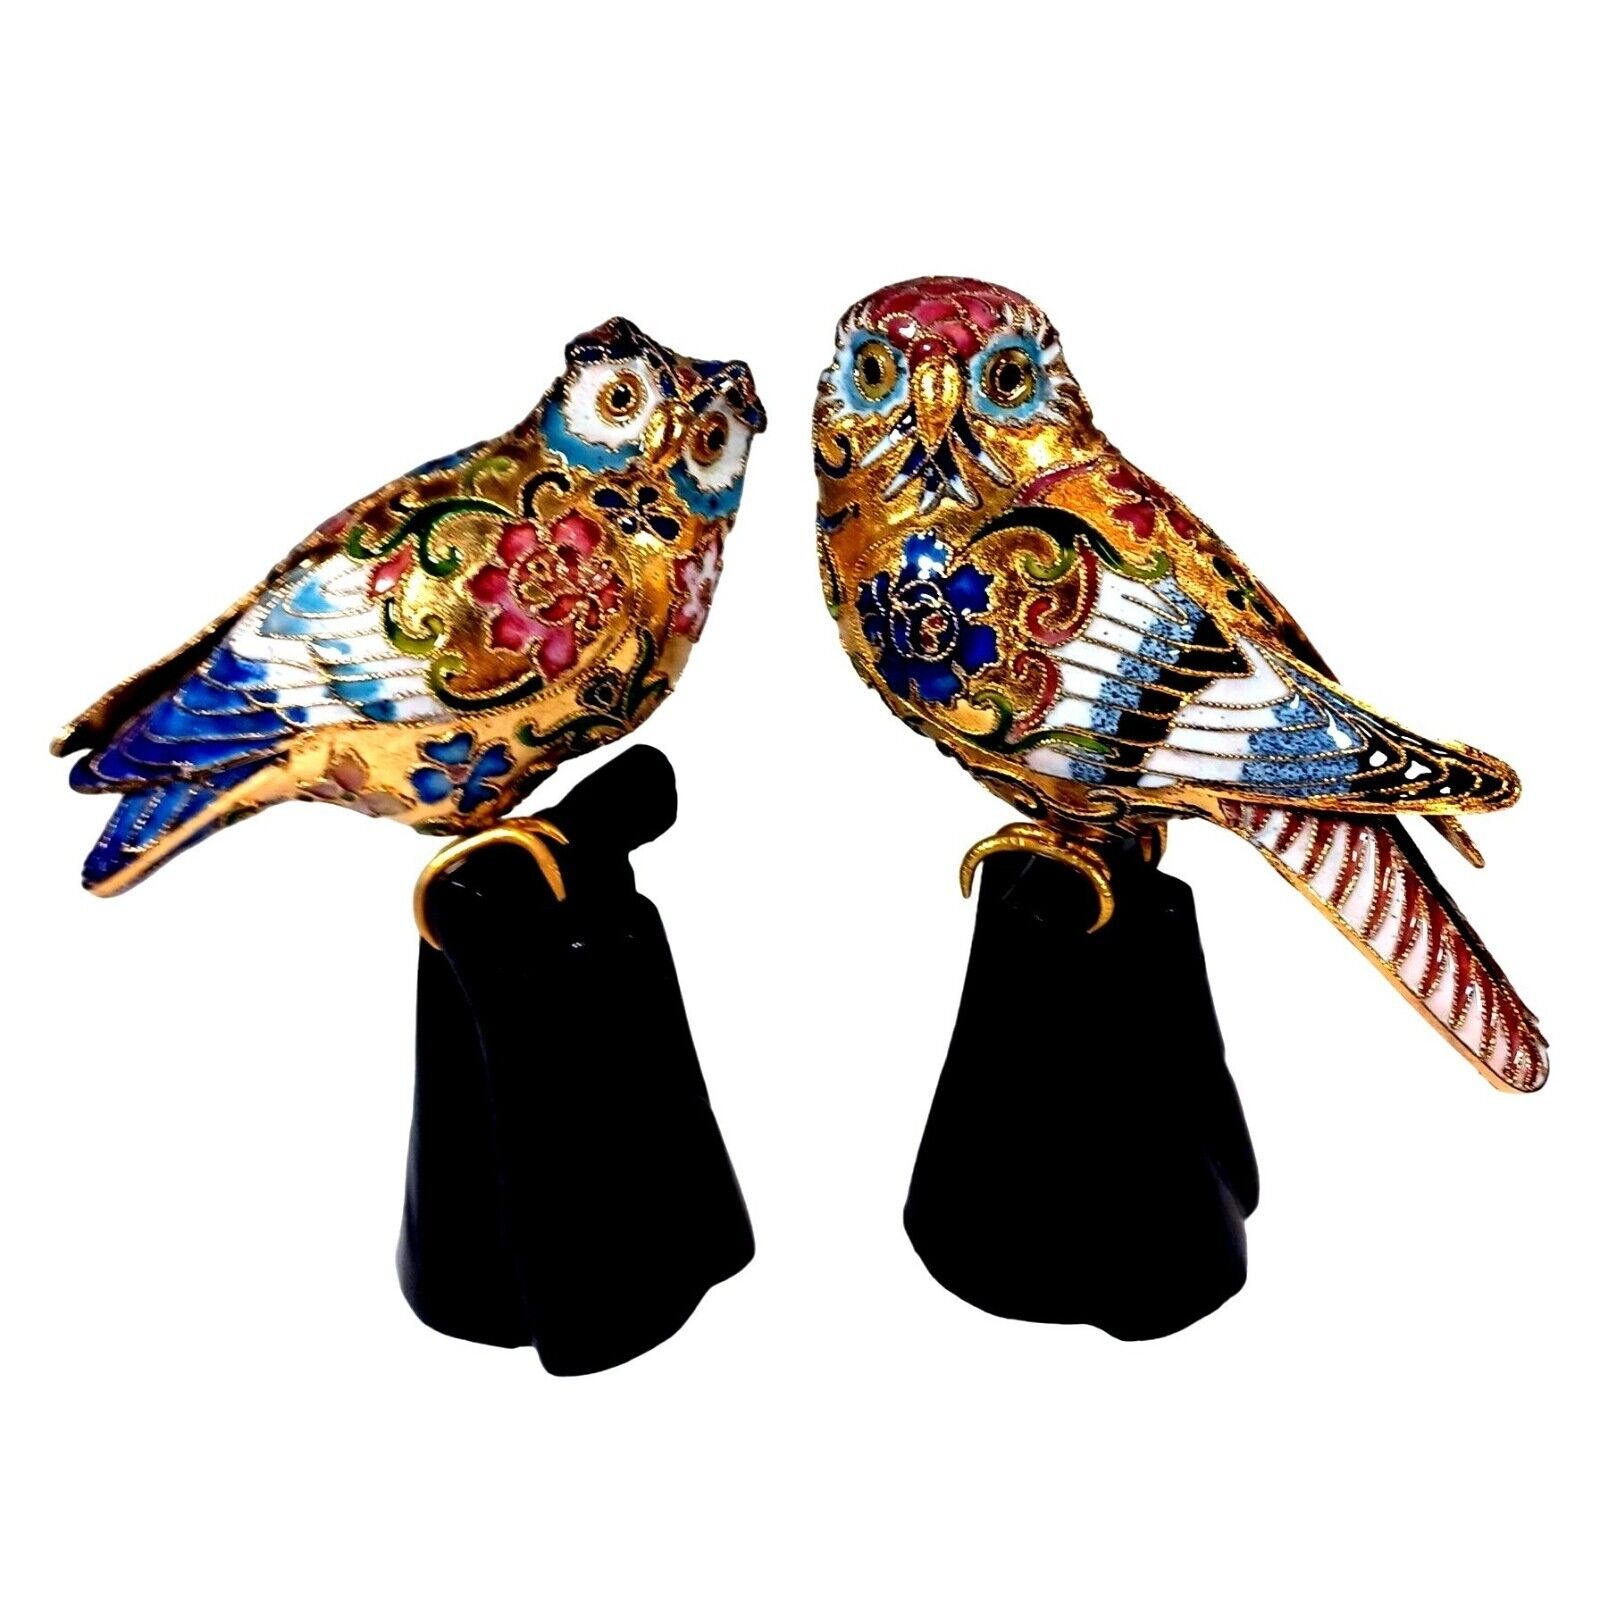 2 Vintage Cloisonne Enamel Gold Leaf Filigree Barn Great Horned Owls On Perch